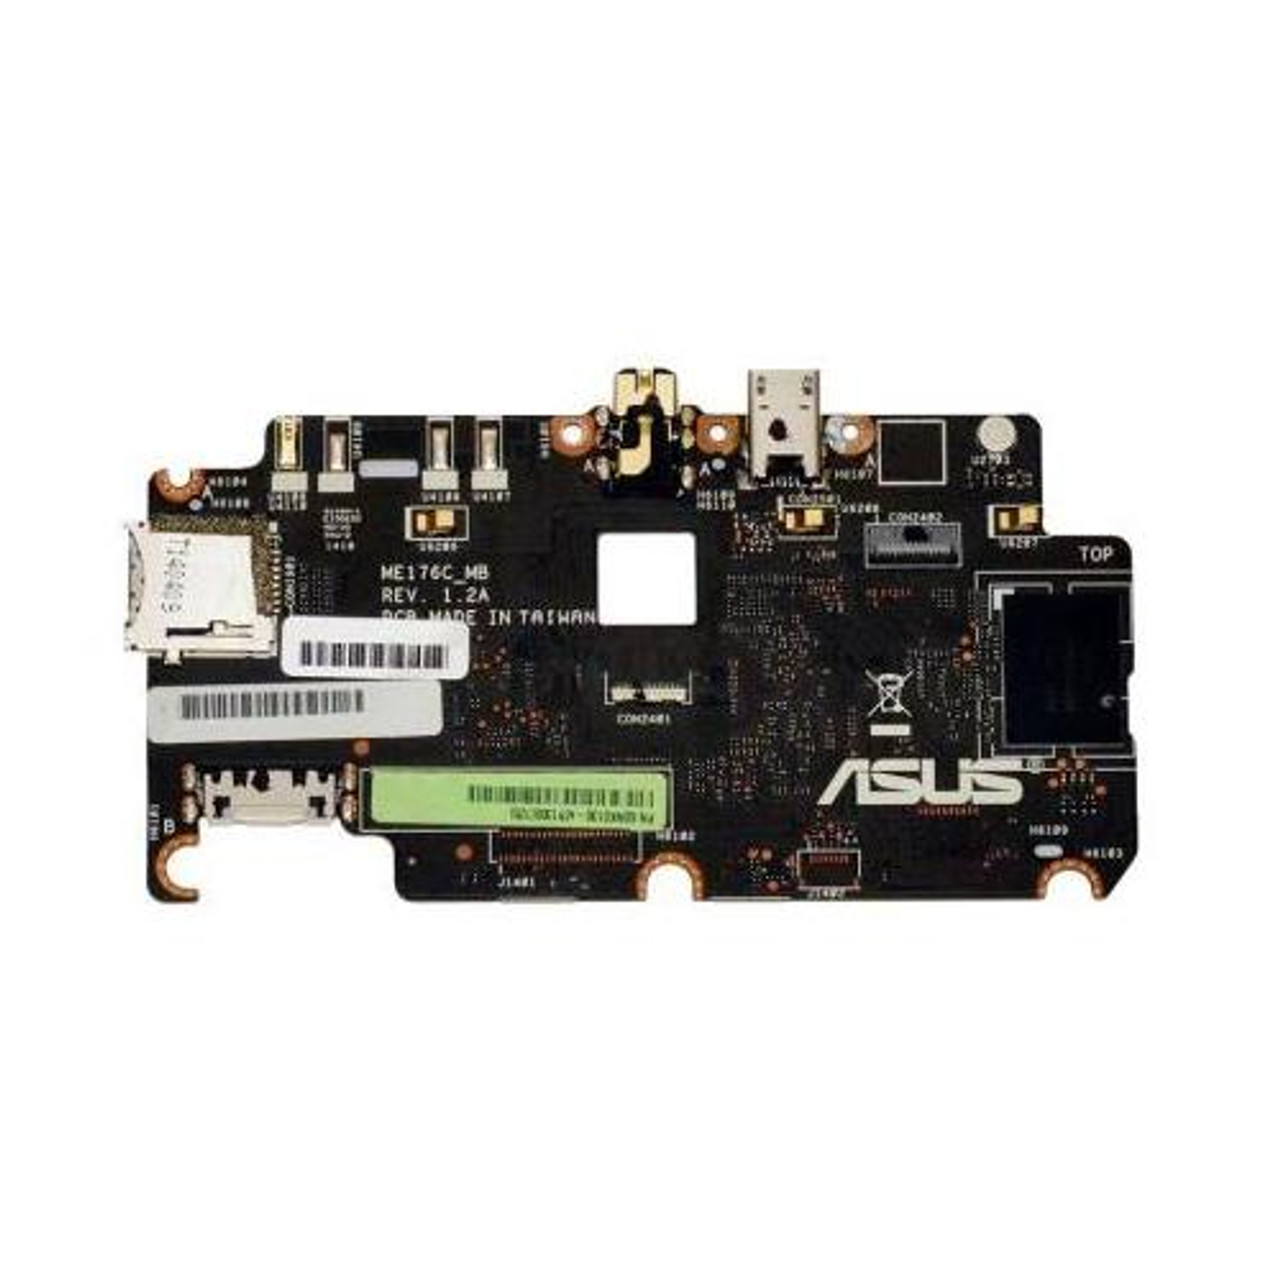 ASUS Me176c Tablet Motherboard 1GB/16GB SSD W Intel Atom Z3745 (Refurbished)